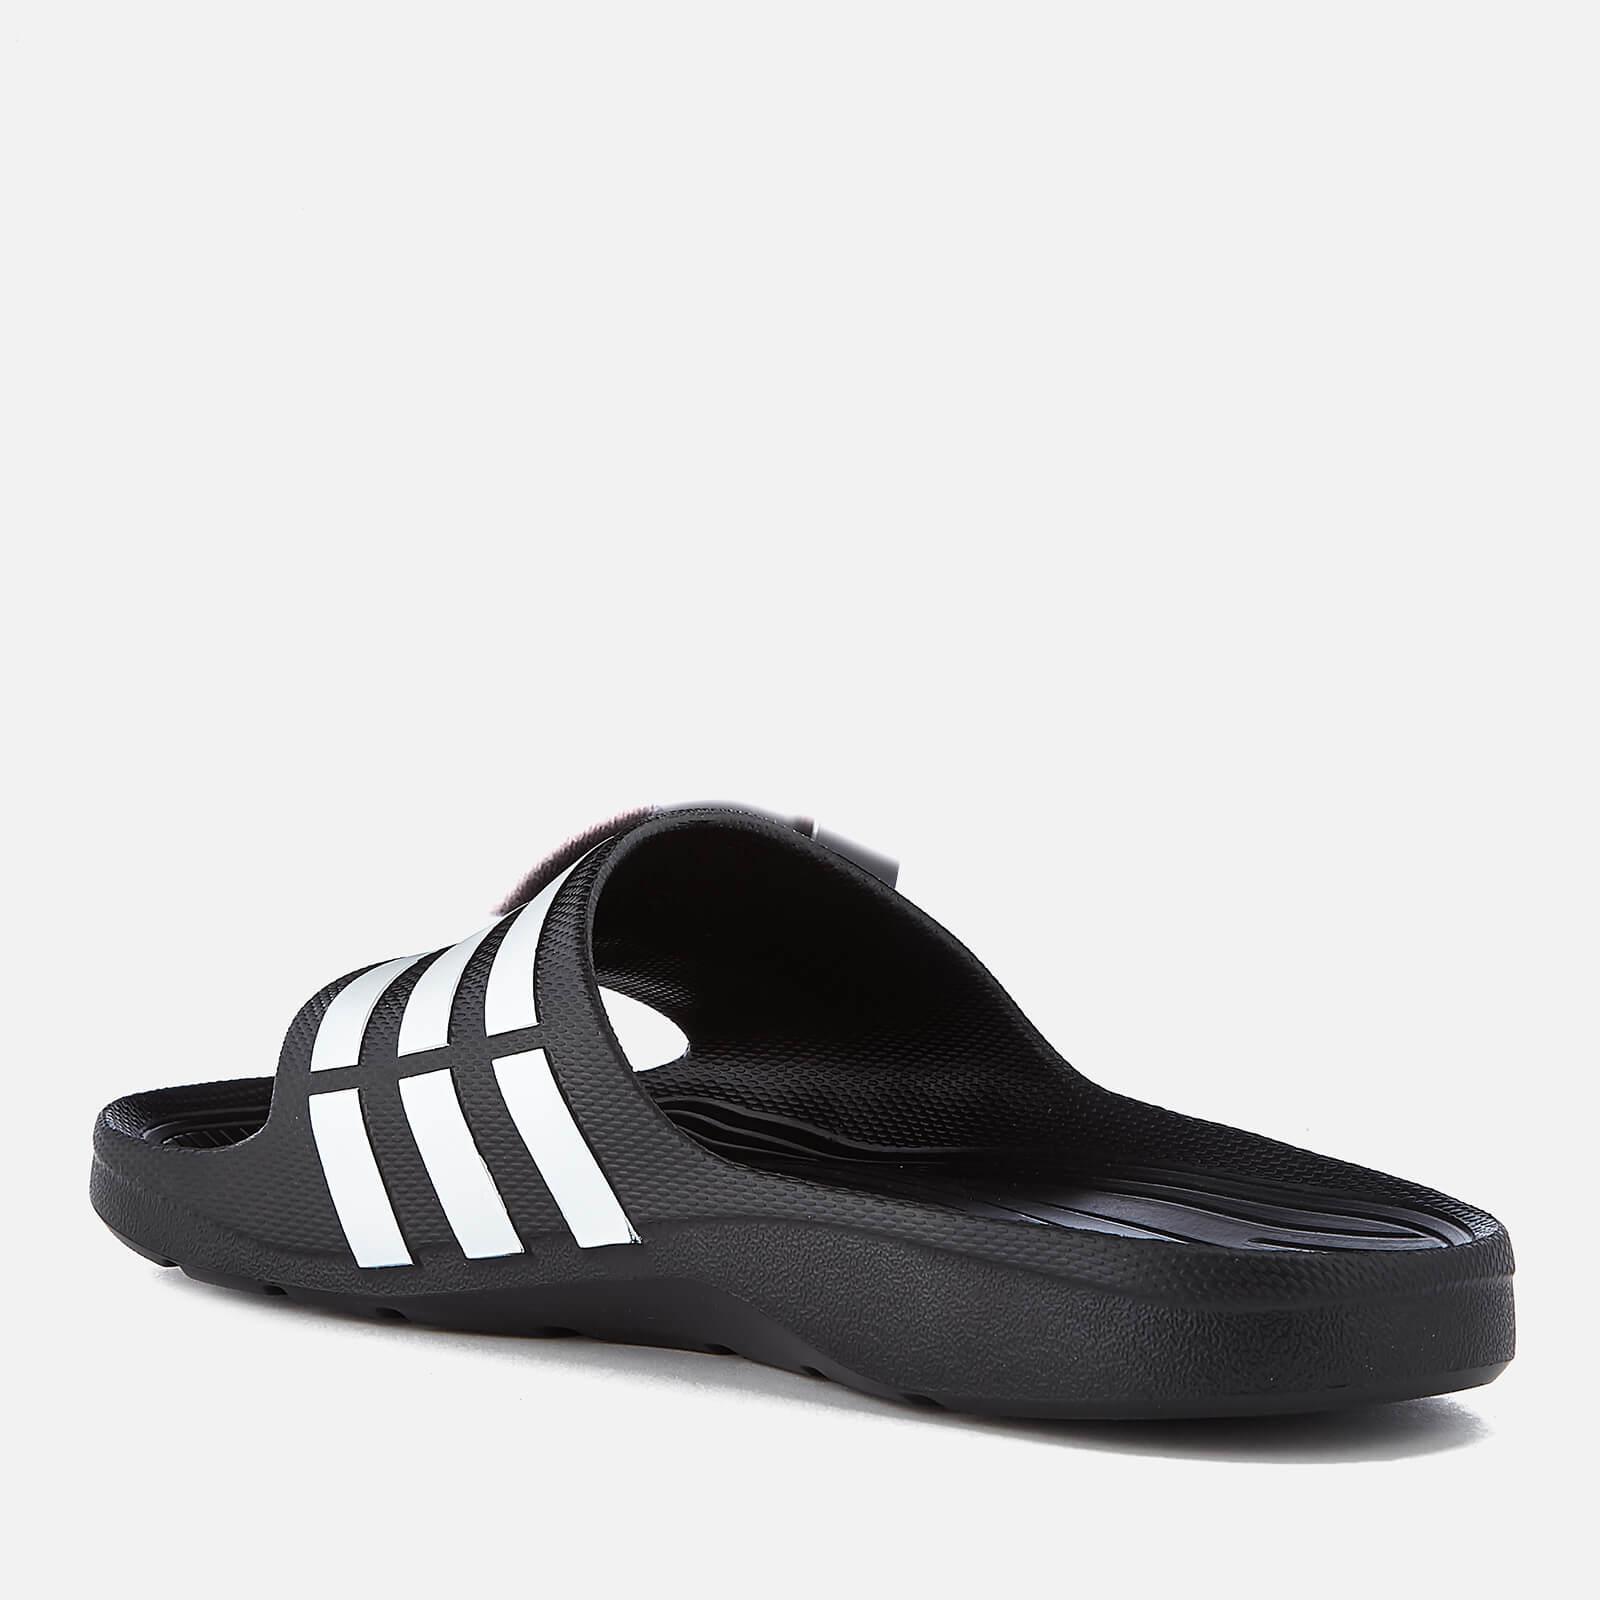  adidas  Swim Duramo  Slide Sandals  in Black Lyst